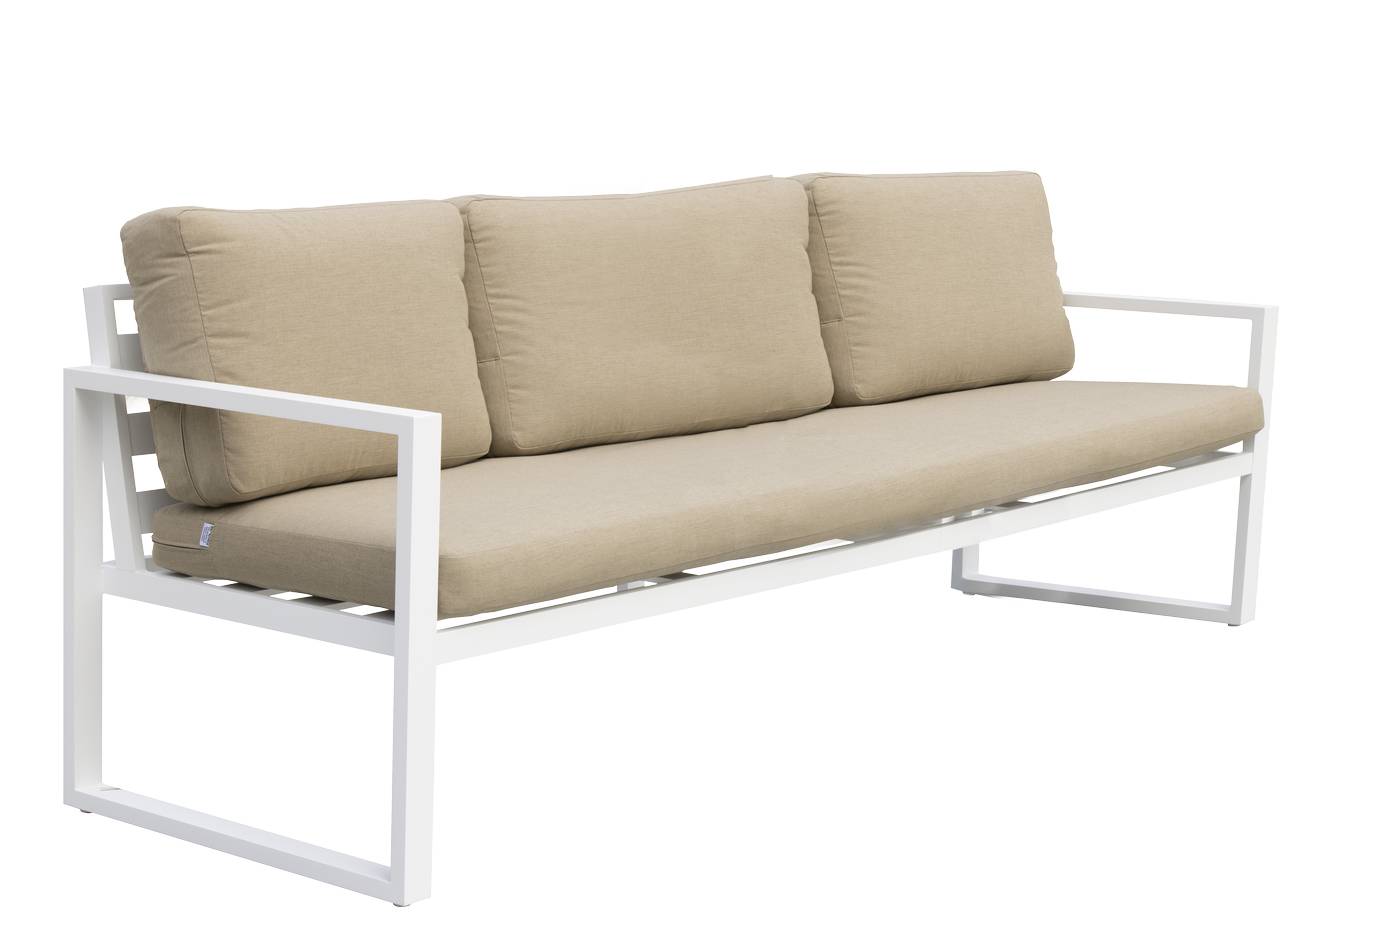 Set Aluminio Fenix-8 - Conjunto aluminio: 1 sofá 3 plazas + 2 sillones + 1 mesa de centro. Disponible en cinco colores diferentes.